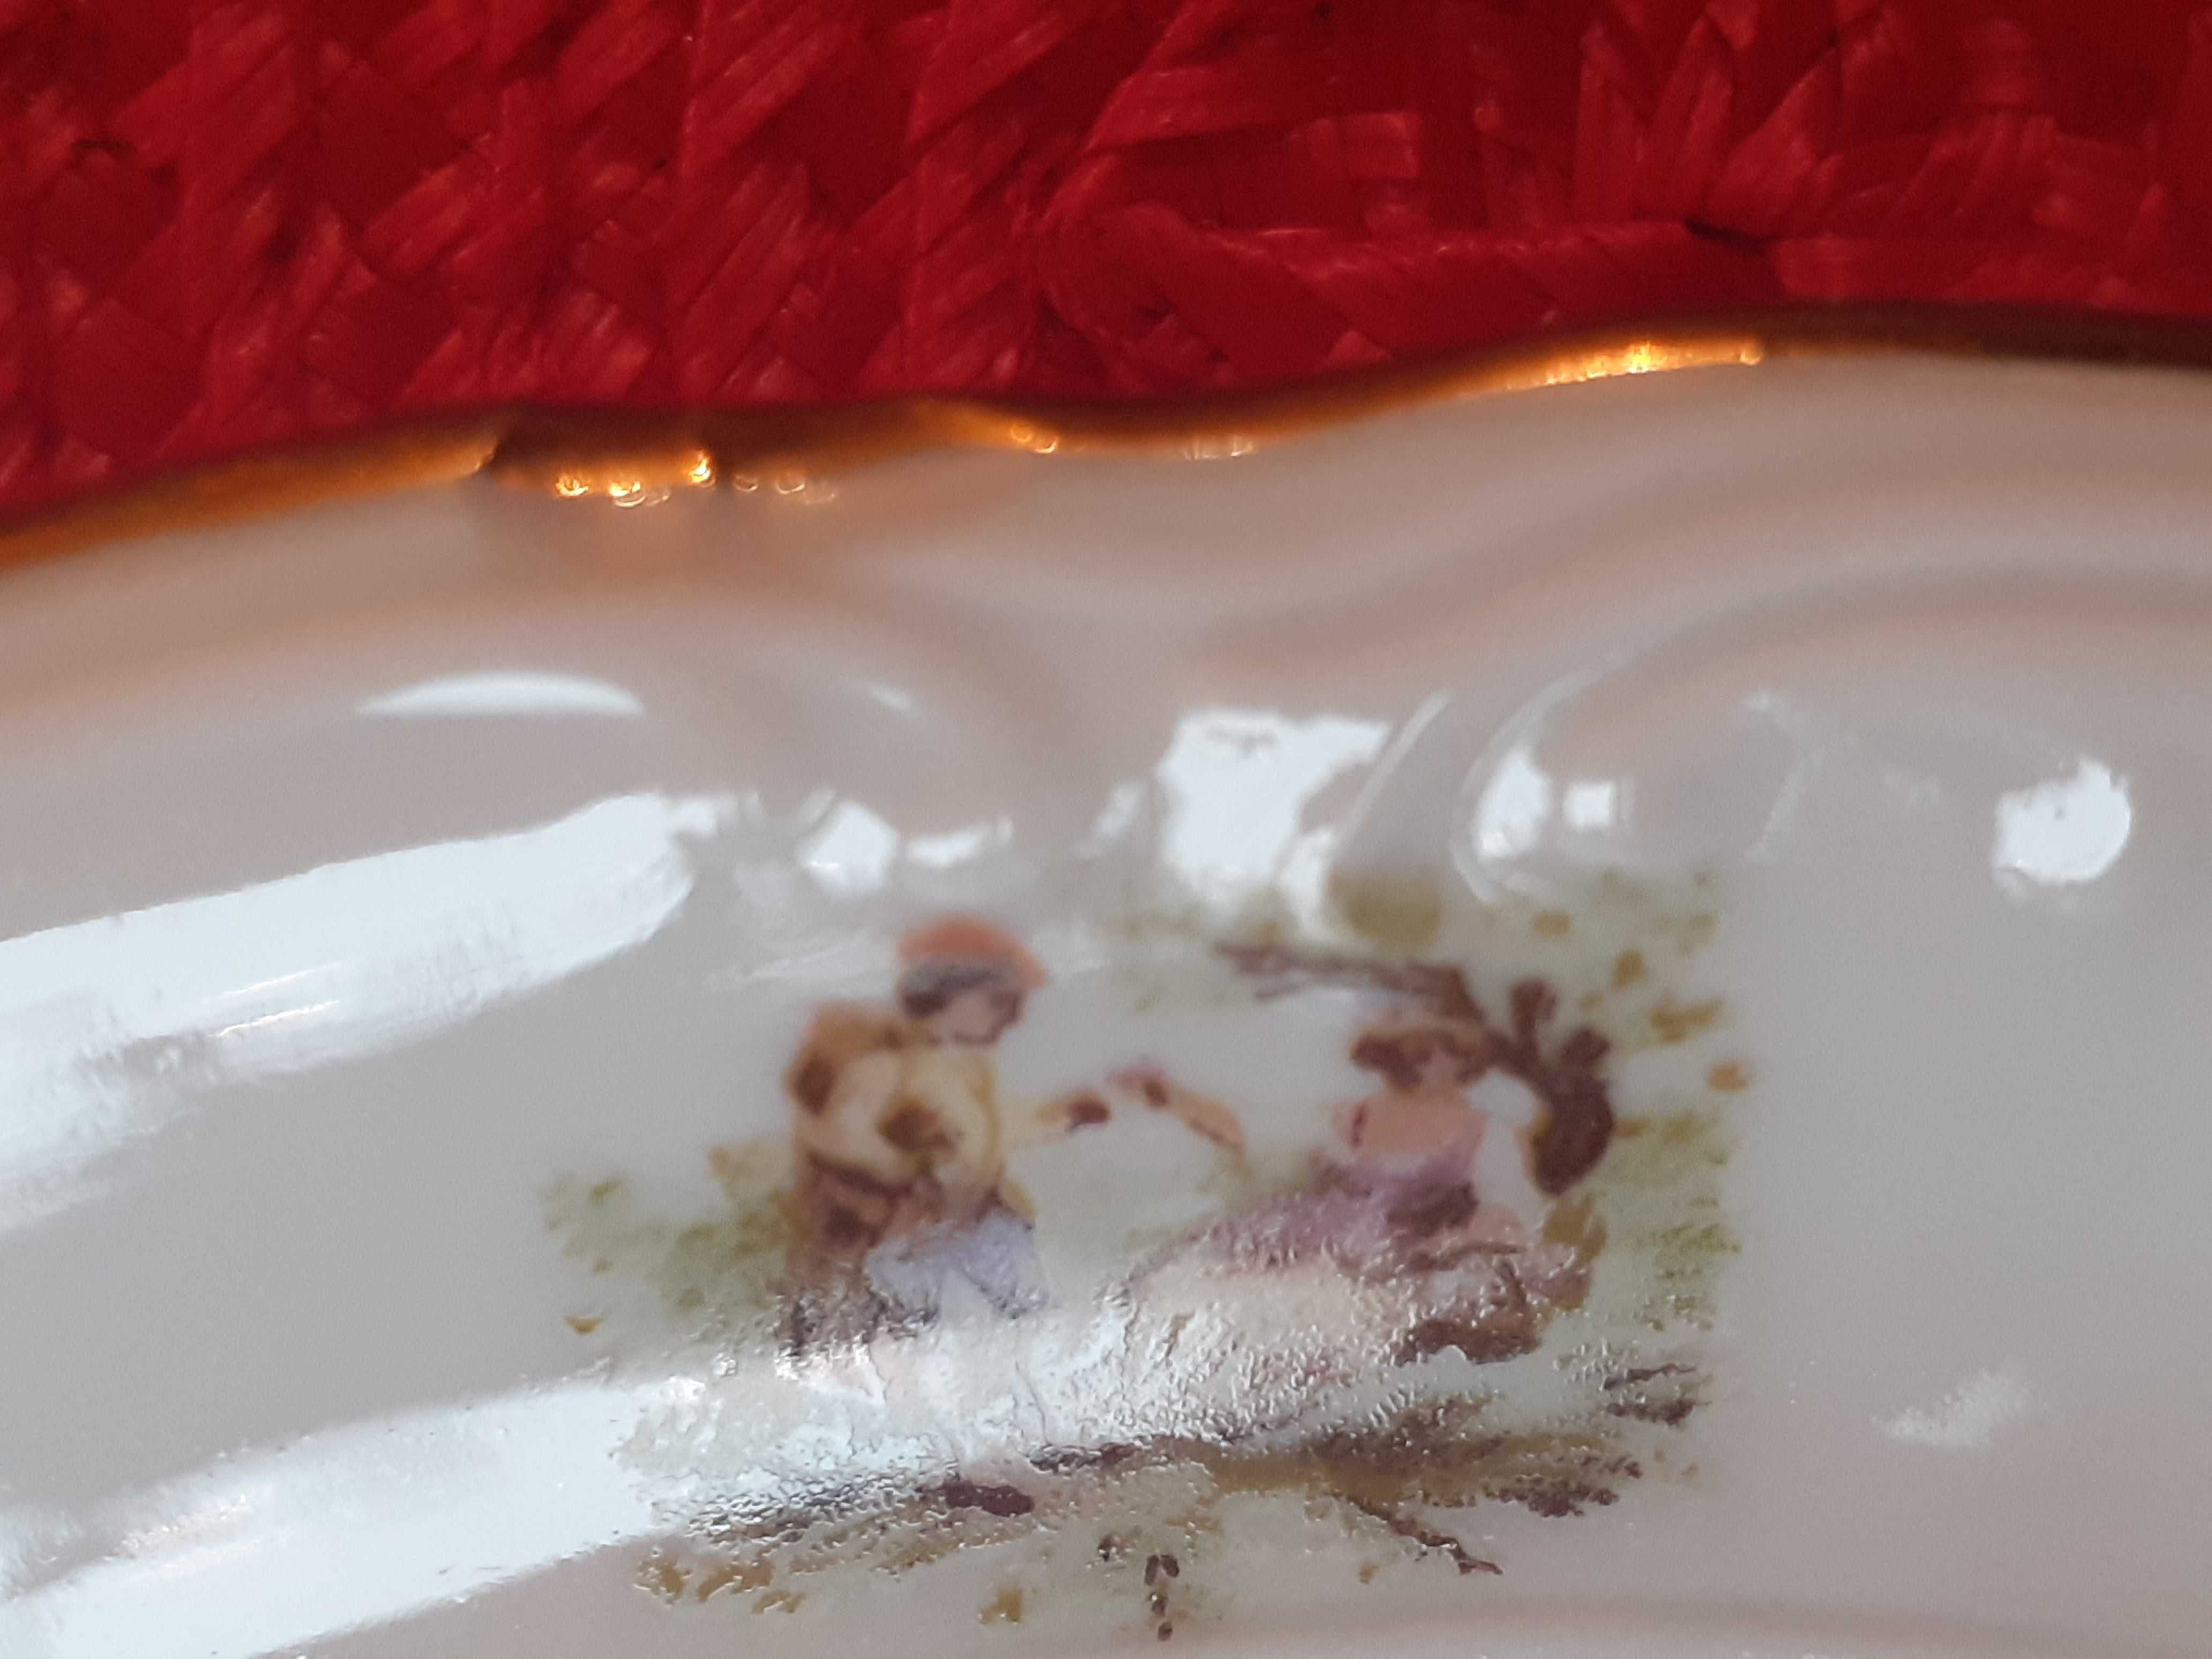 Ozdobny porcelanowy talerz na ciastka  Walbrzych z PIEKNYM wzorem